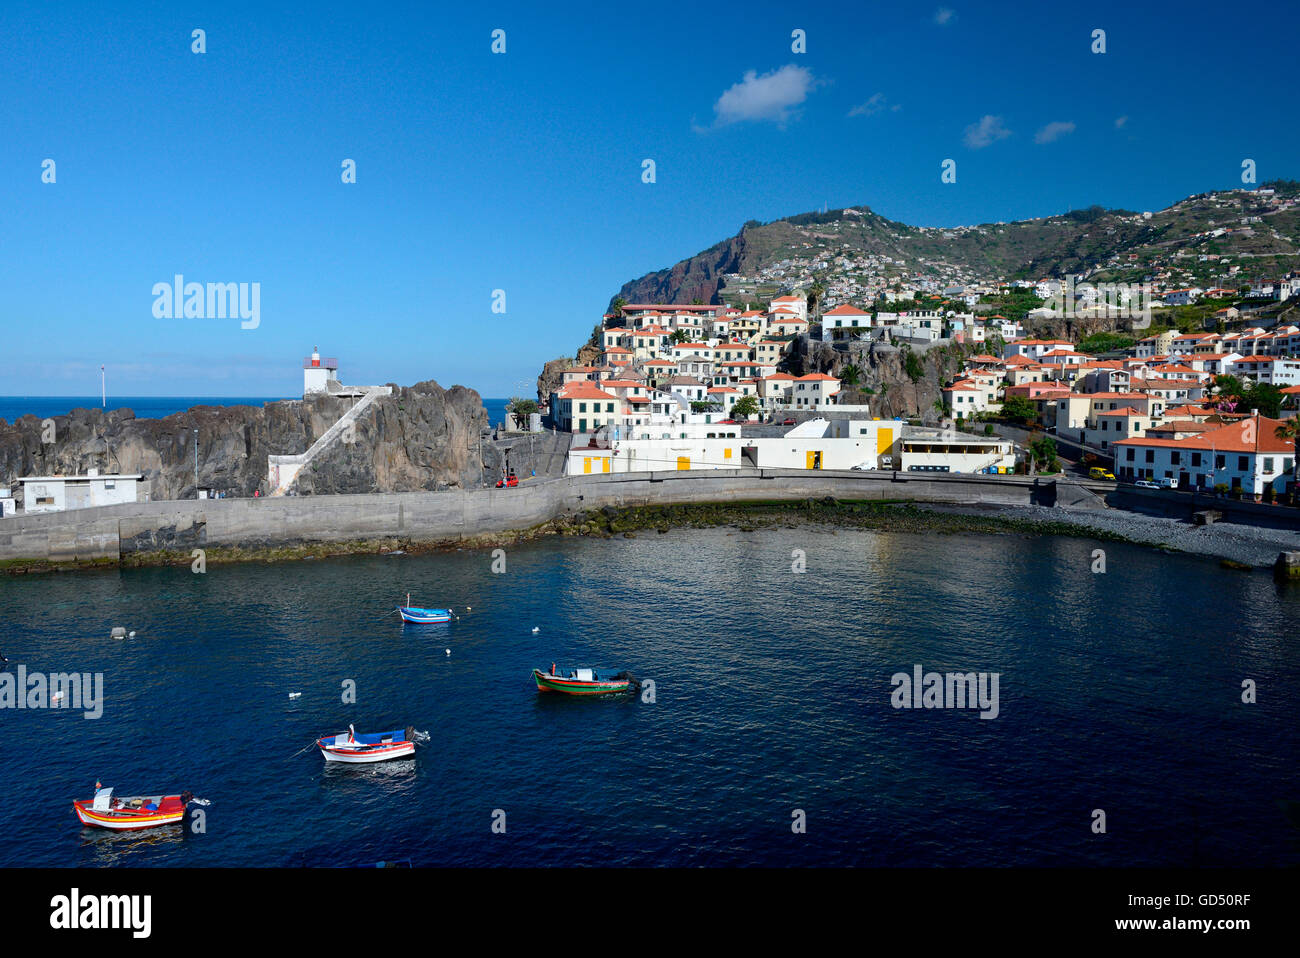 Camara de Lobos, Hafen und Dorf, Madeira, Portugal, Europa, Fischerdorf Stock Photo